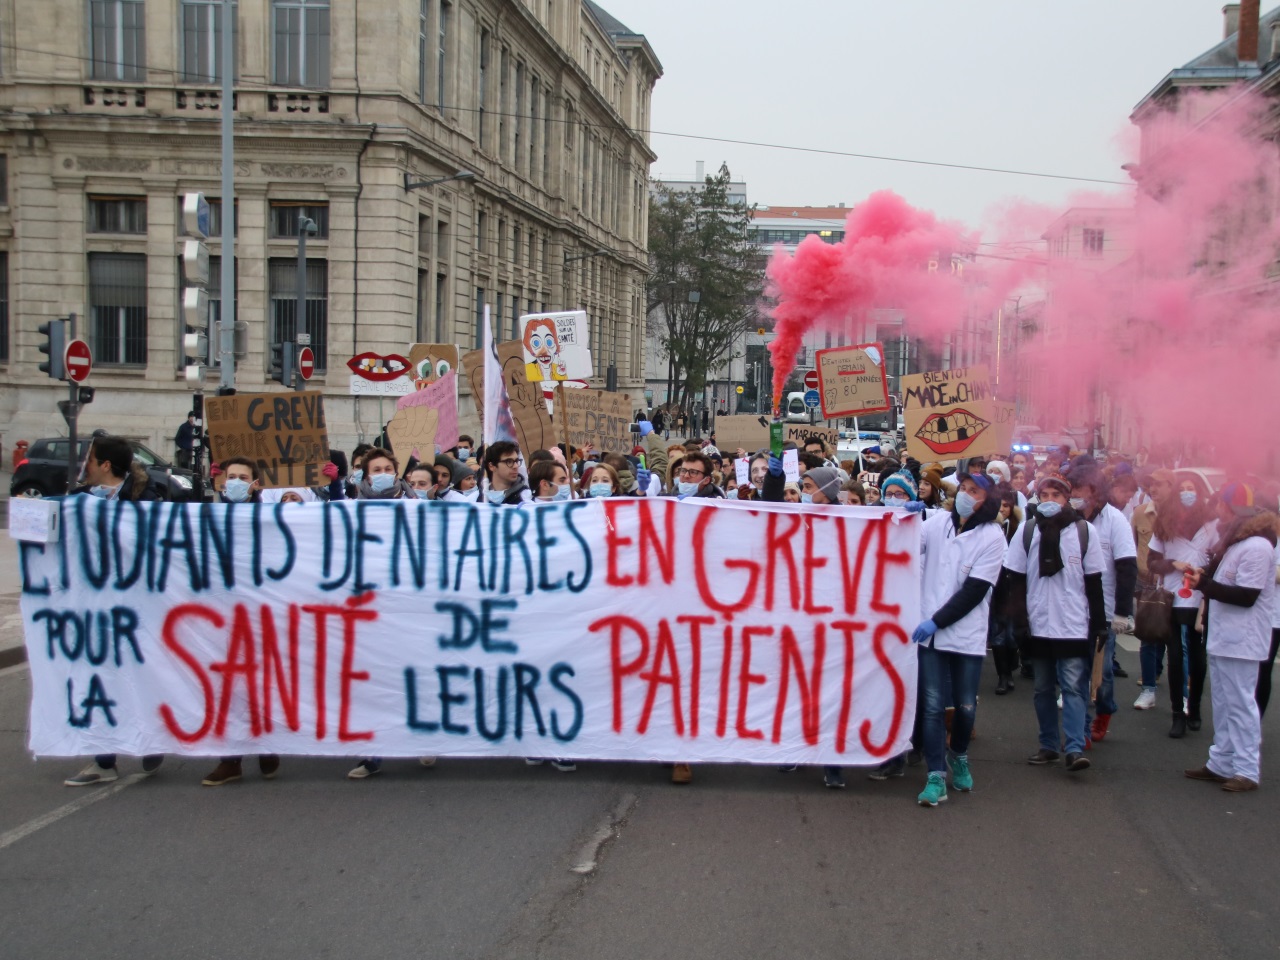 Etudiants dentaires en grève dans la rue - Dentaire service